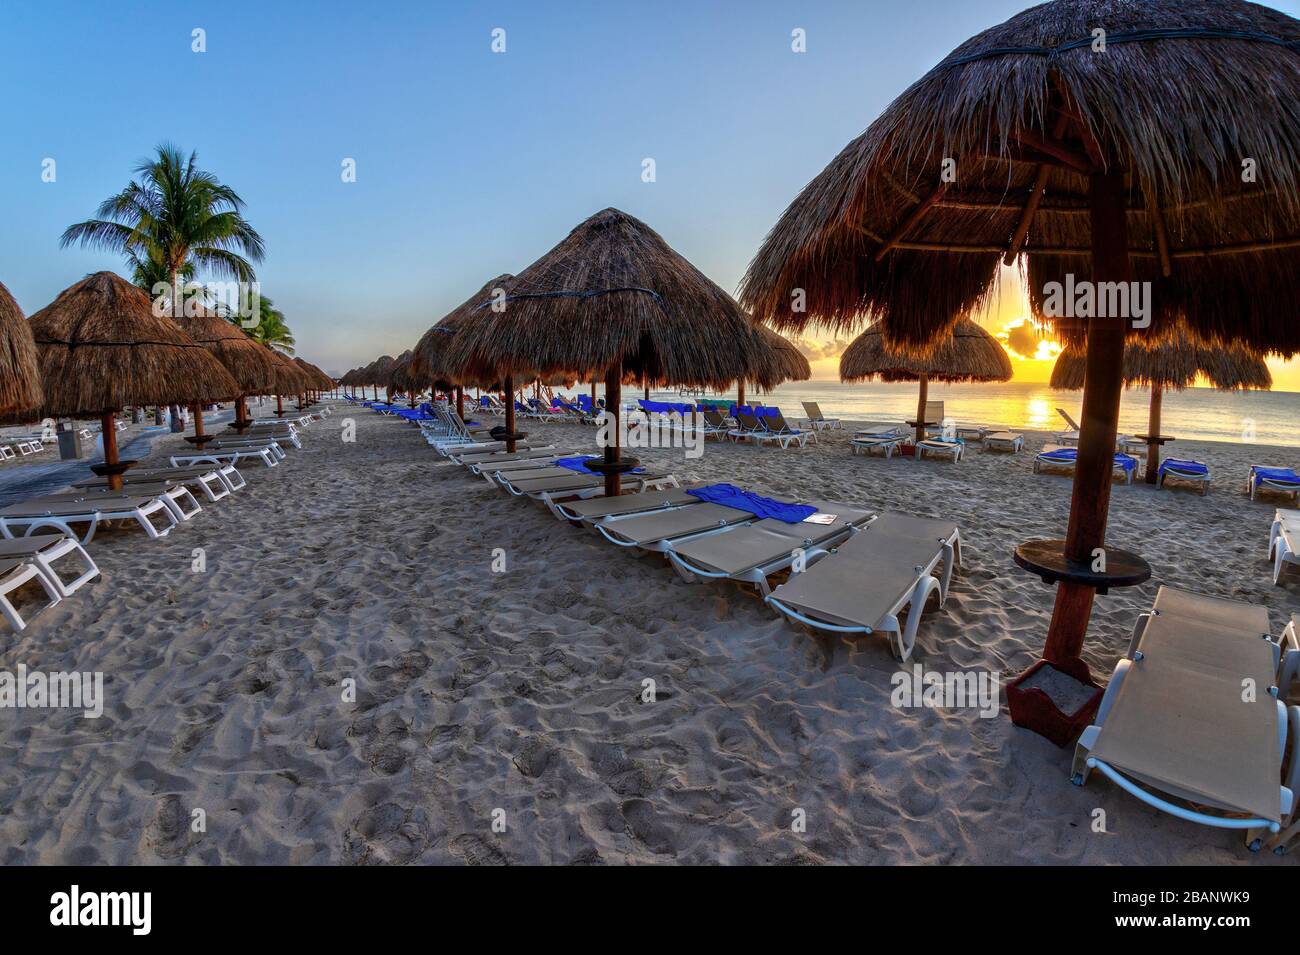 Lever du soleil doré sur des rangées de chaises longues et de parasols de palmiers lors de vacances sur une plage de sable des Caraïbes à Riviera Maya à Cancun, au Mexique. Banque D'Images